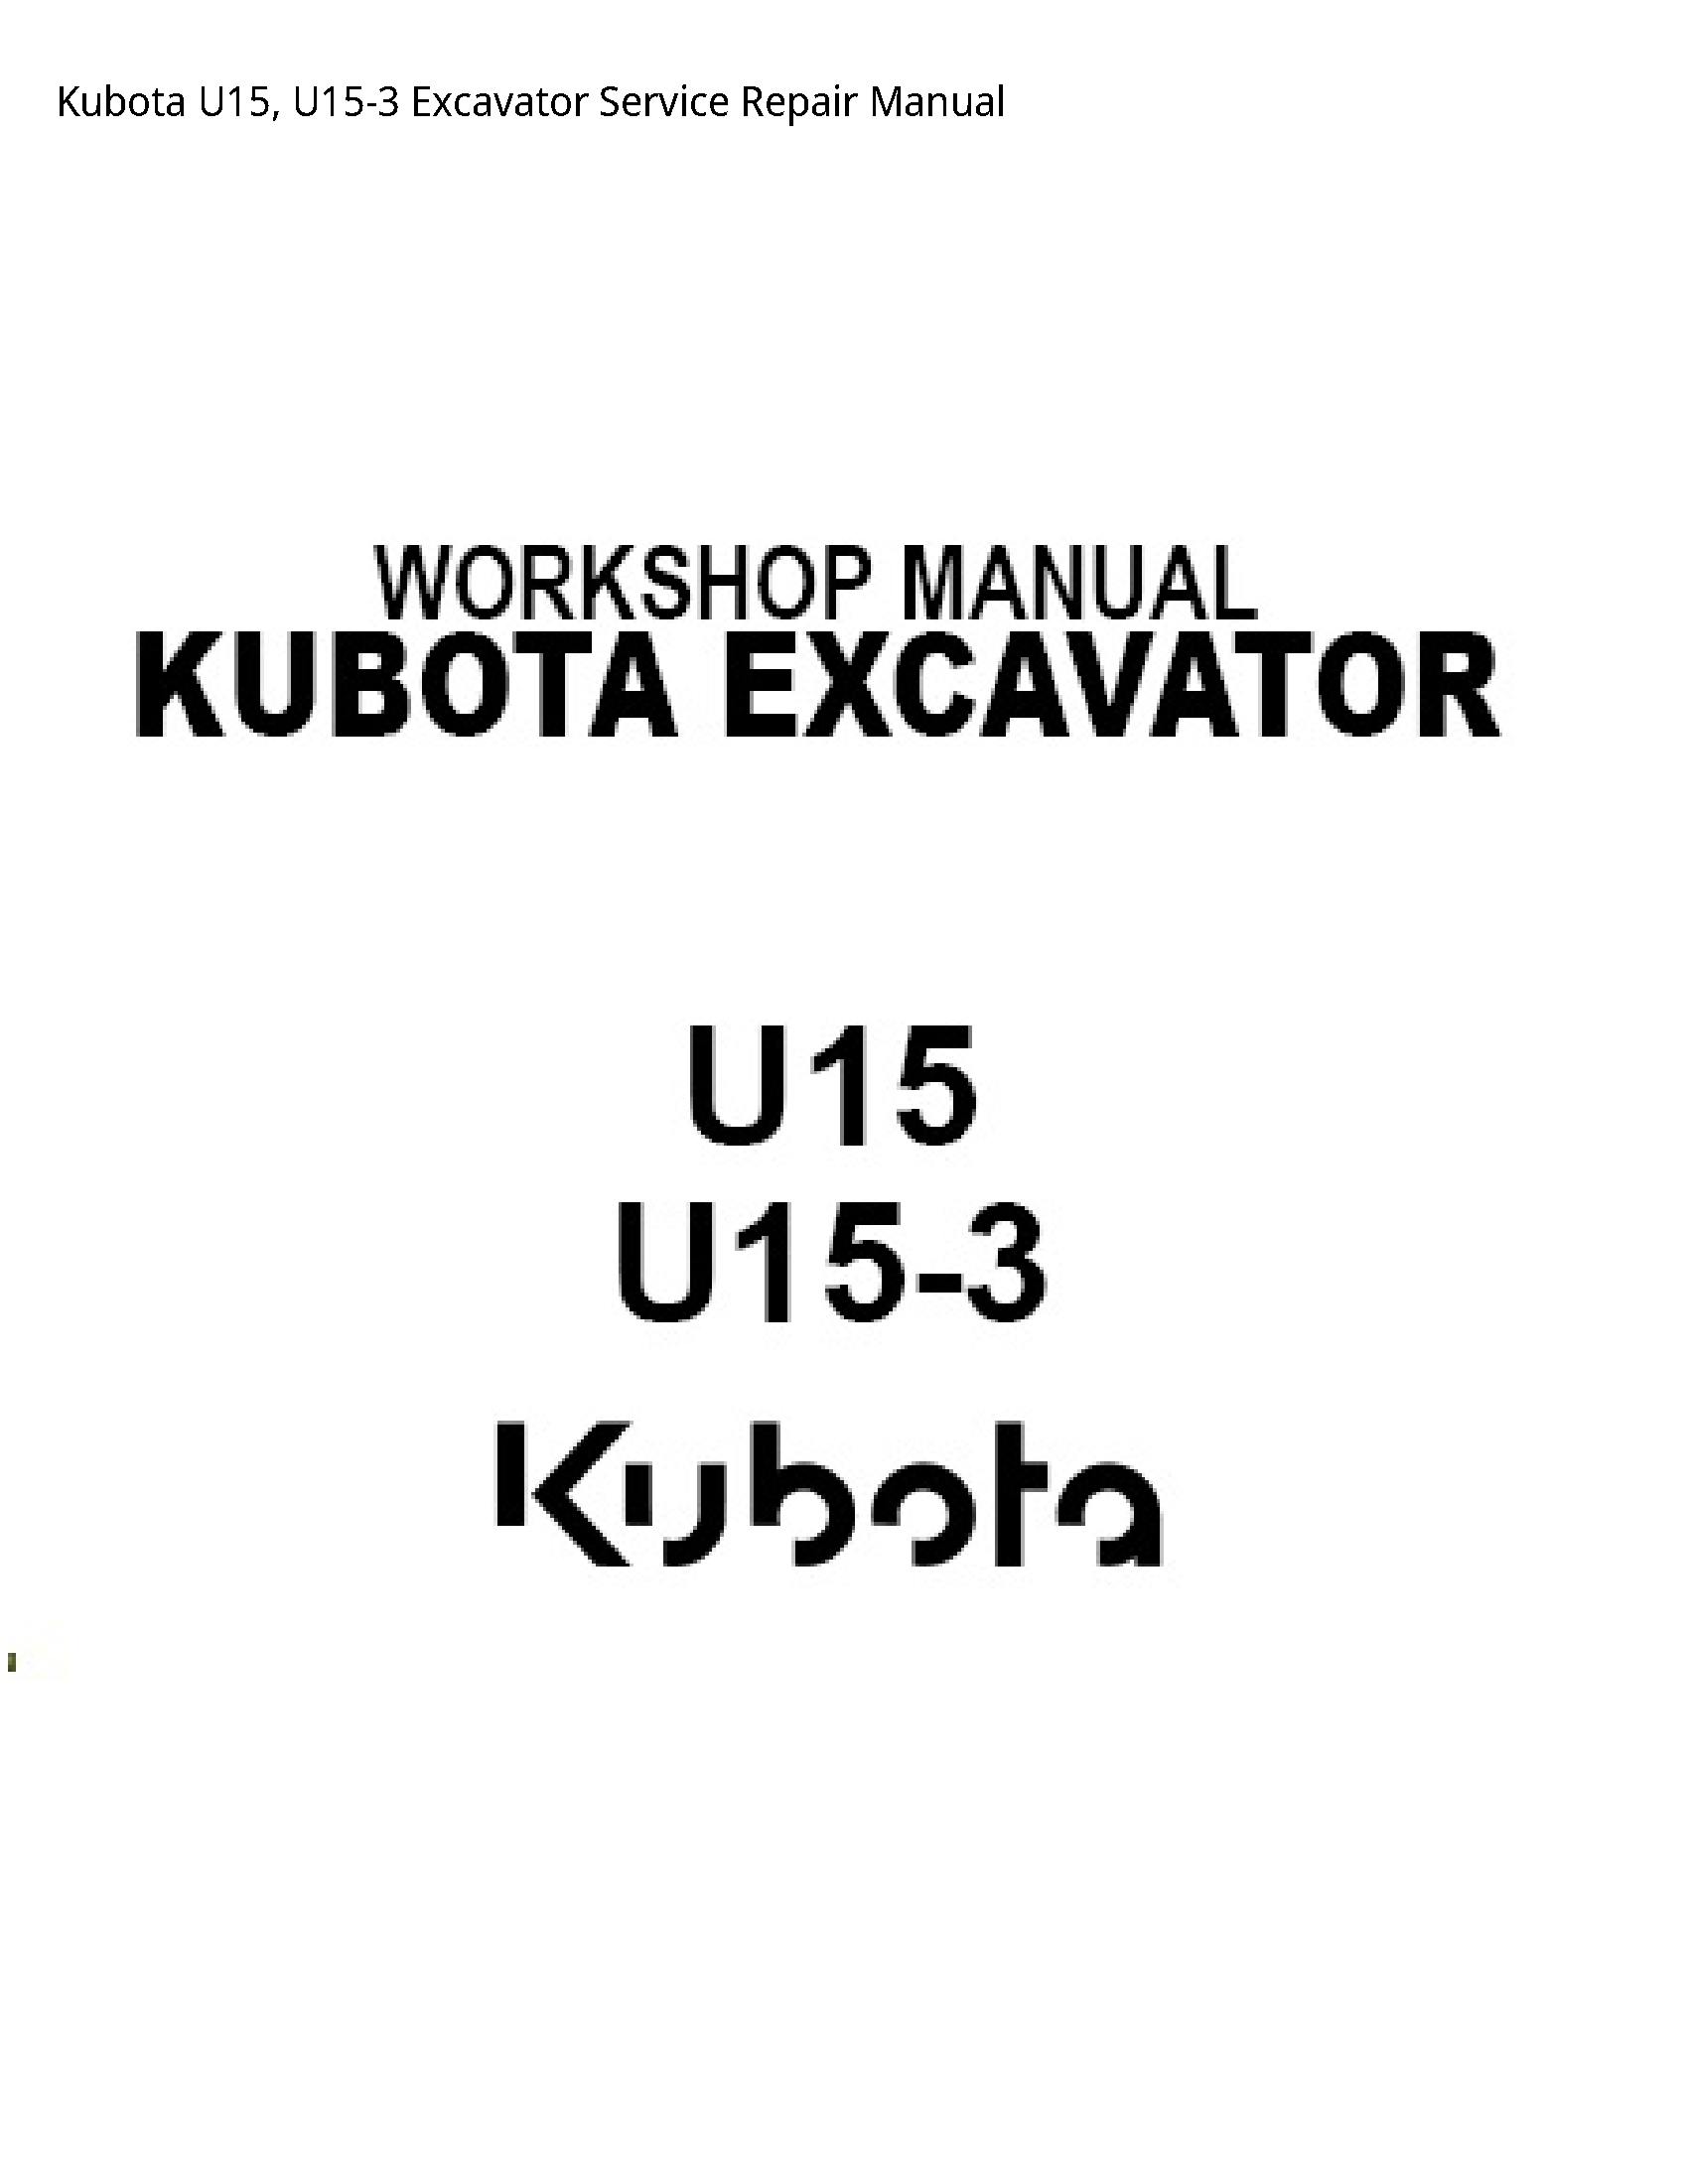 Kubota U15 Excavator manual